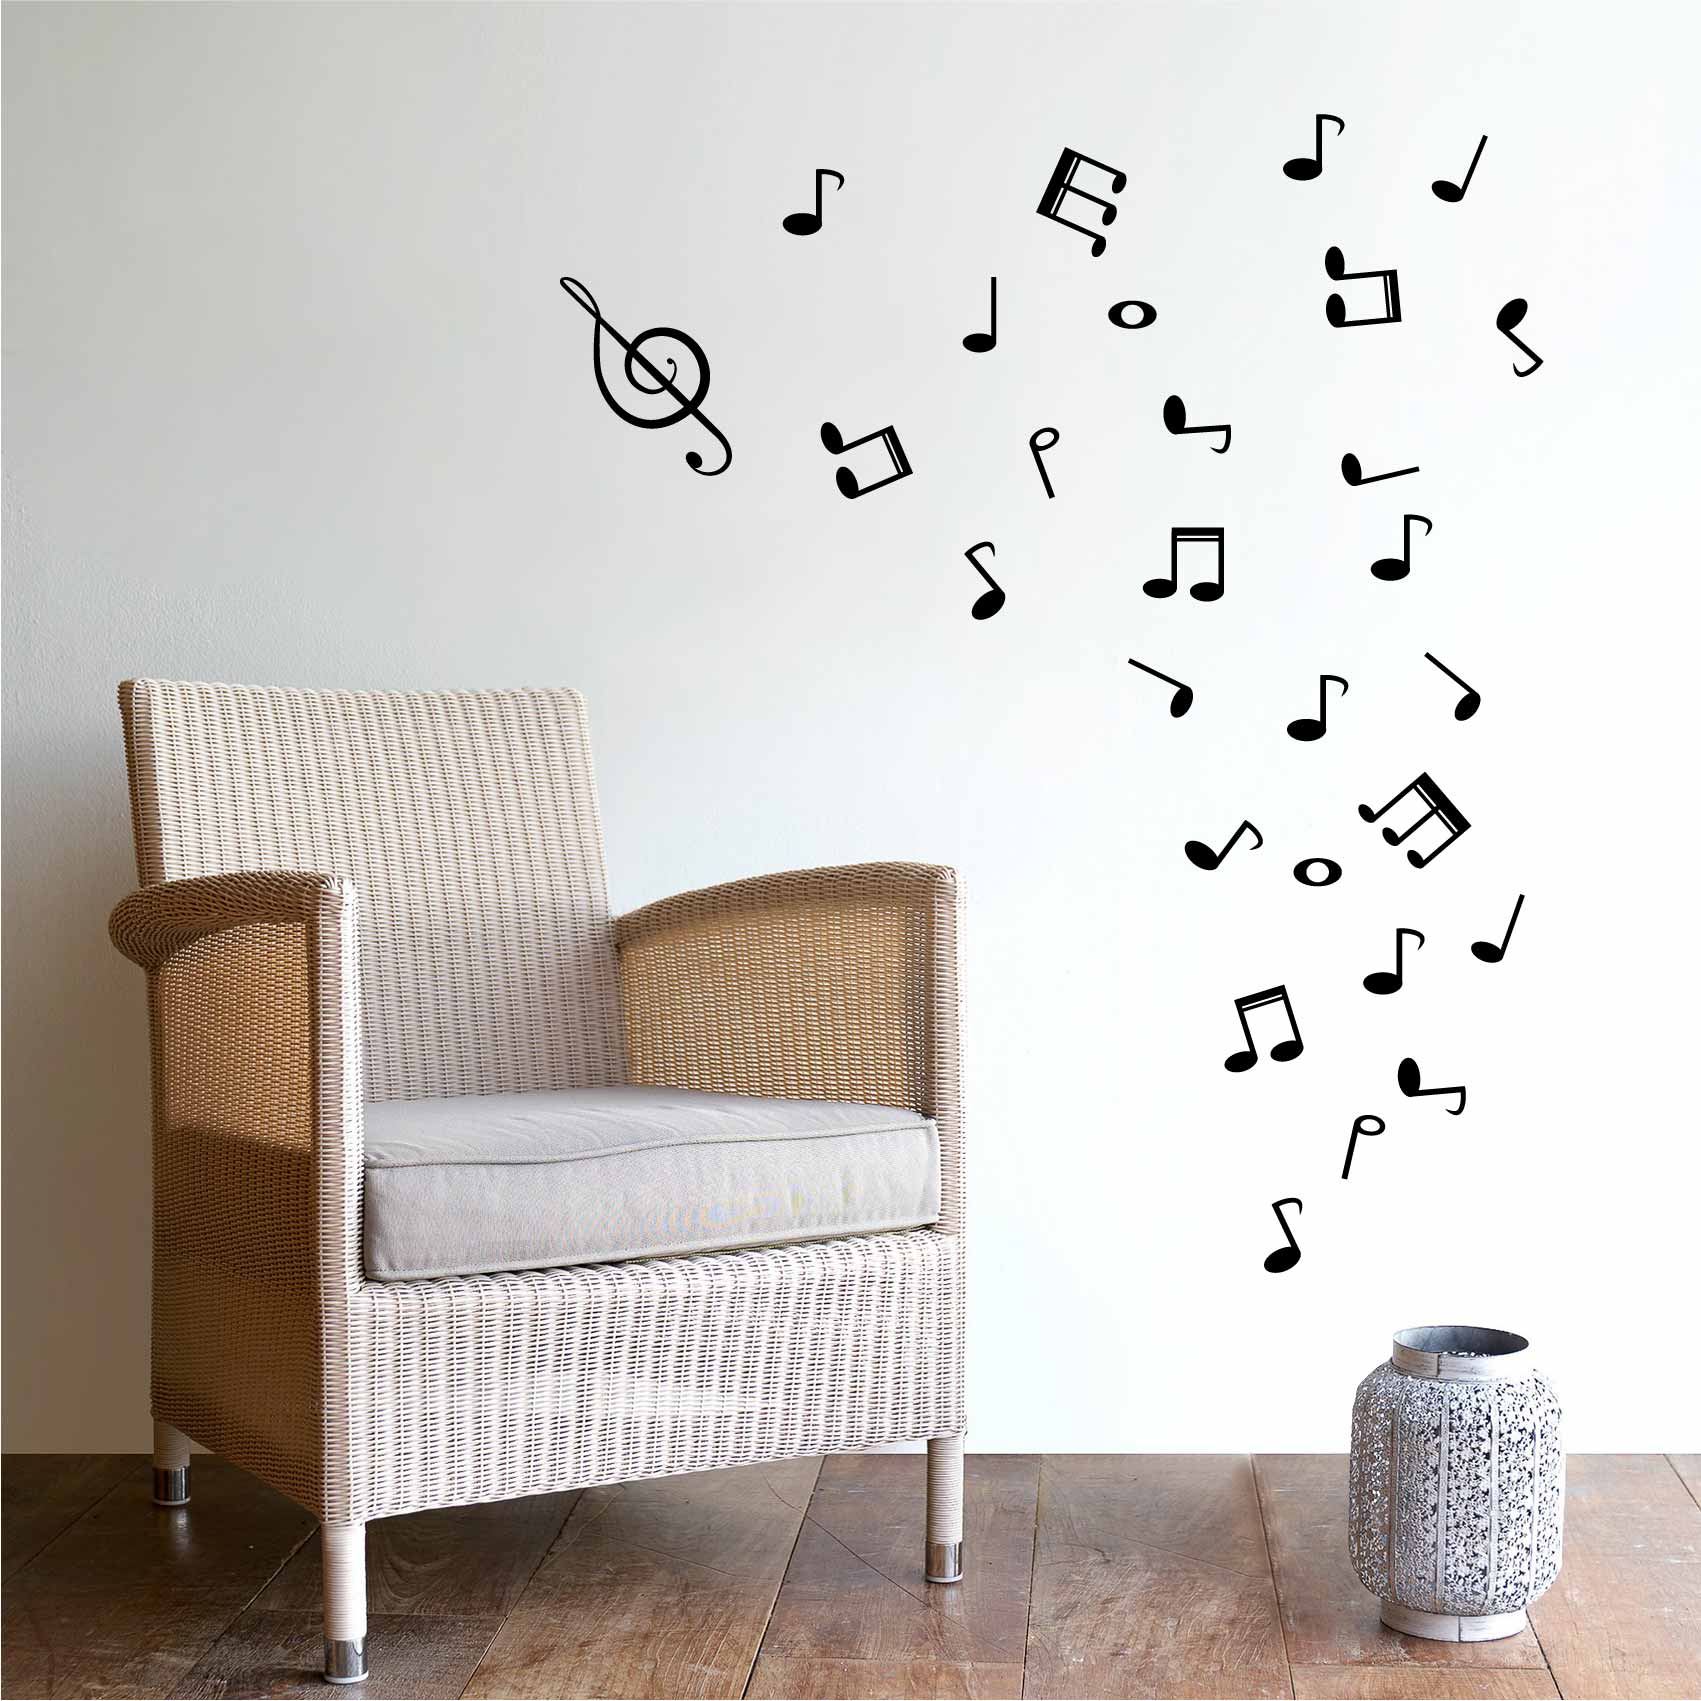 stickers-notes-de-musique-ref77musique-stickers-muraux-musique-autocollant-deco-salon-chambre-music-sticker-mural-musique